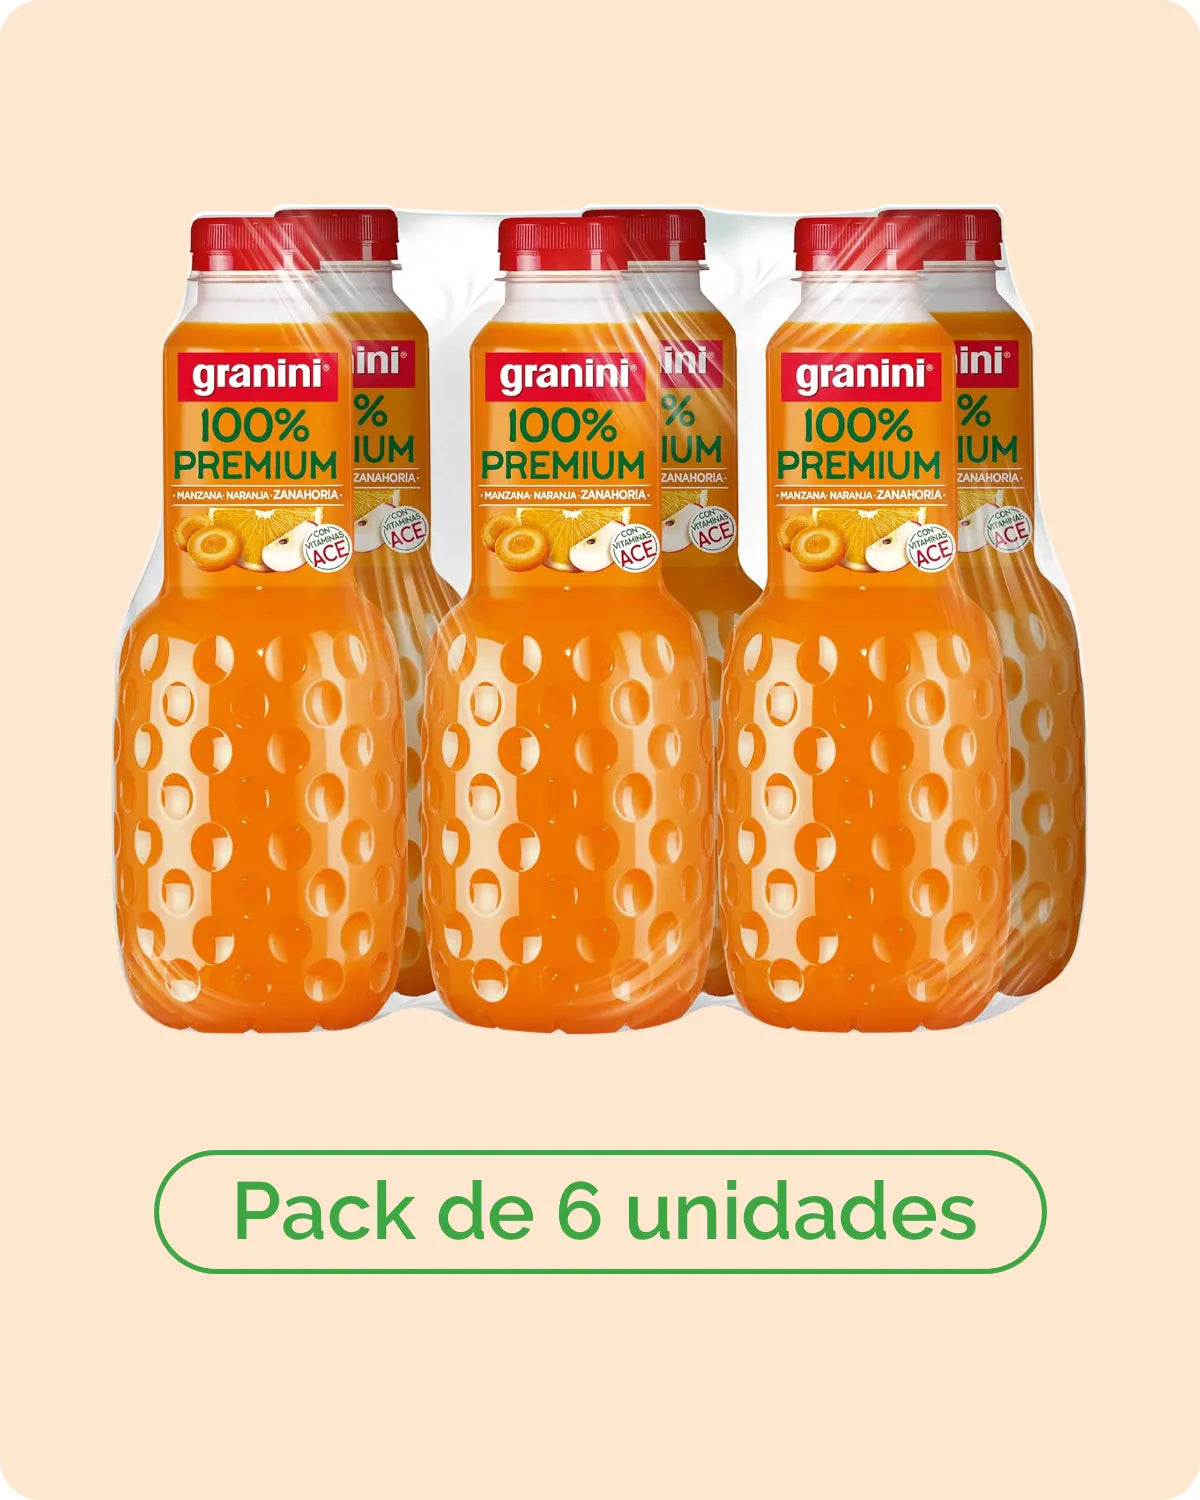 
                  
                    Naranja, zanahoria y manzana - 100% Premium - Pack 6 (6x1L)
                  
                